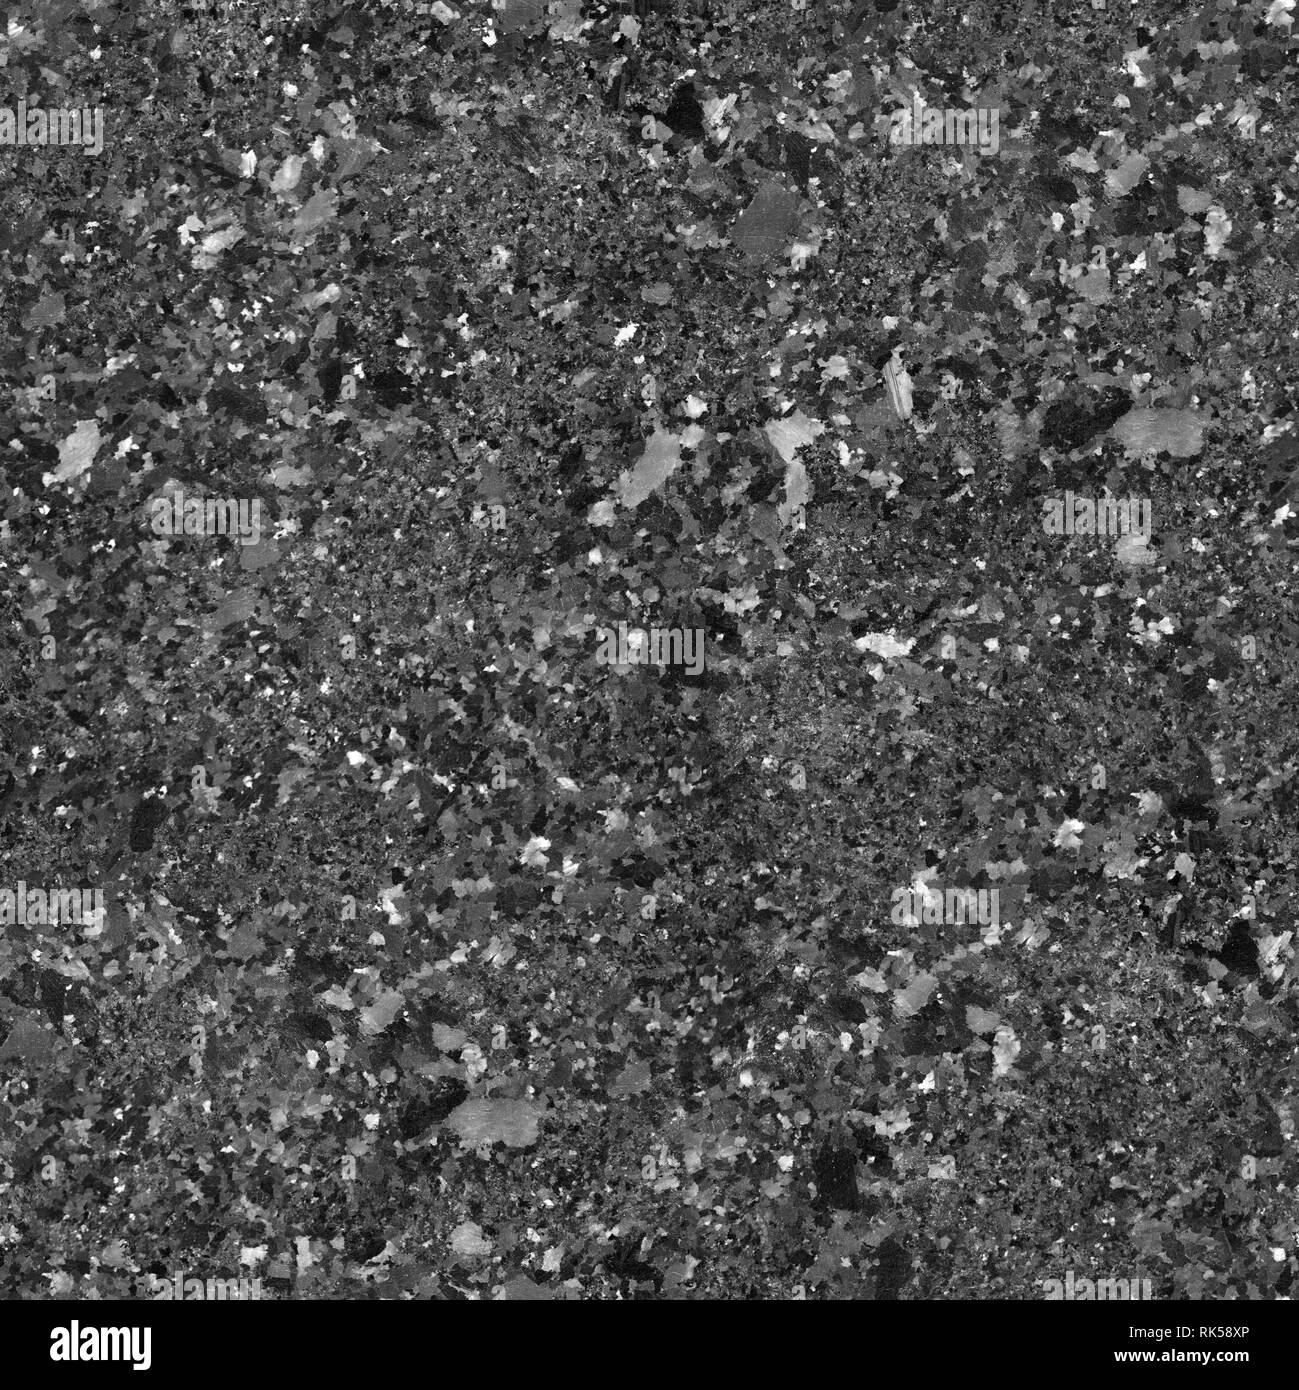 La texture de granit noir. Close up shot. Fond carré transparent, tuile prête. Banque D'Images